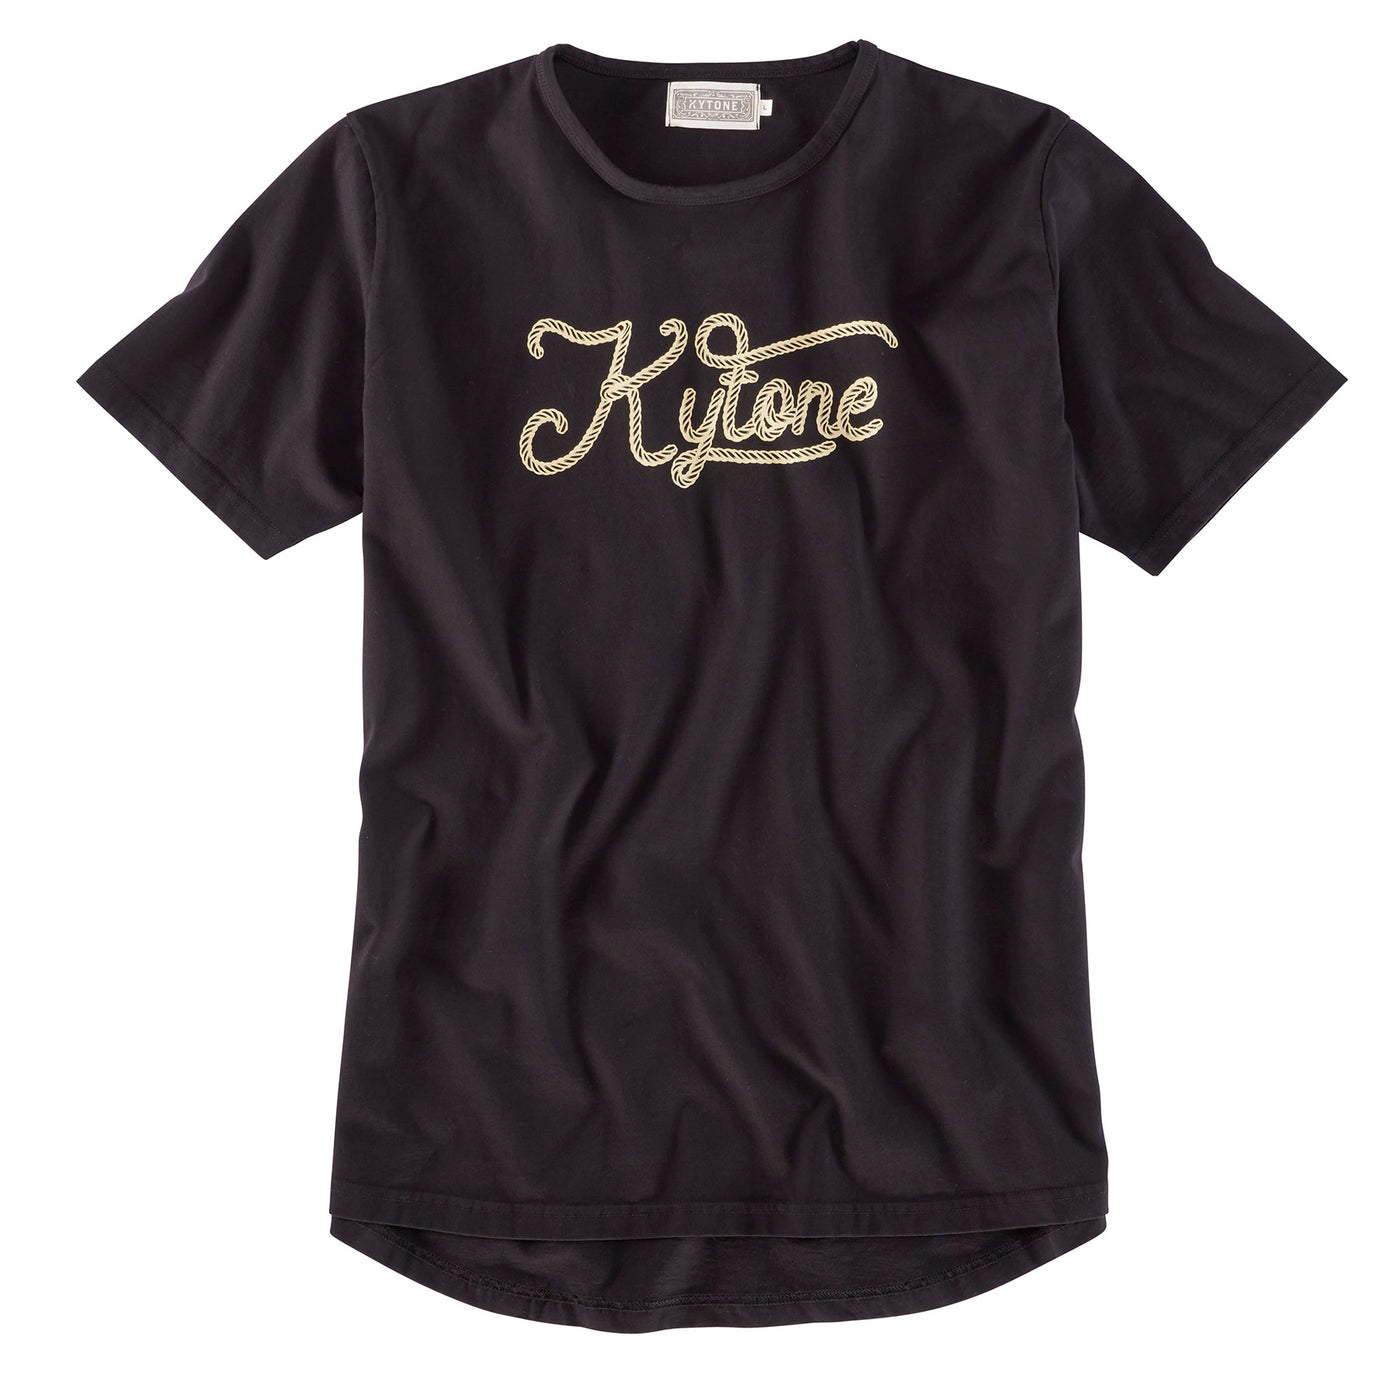 Kytone Rope Black T-Shirt